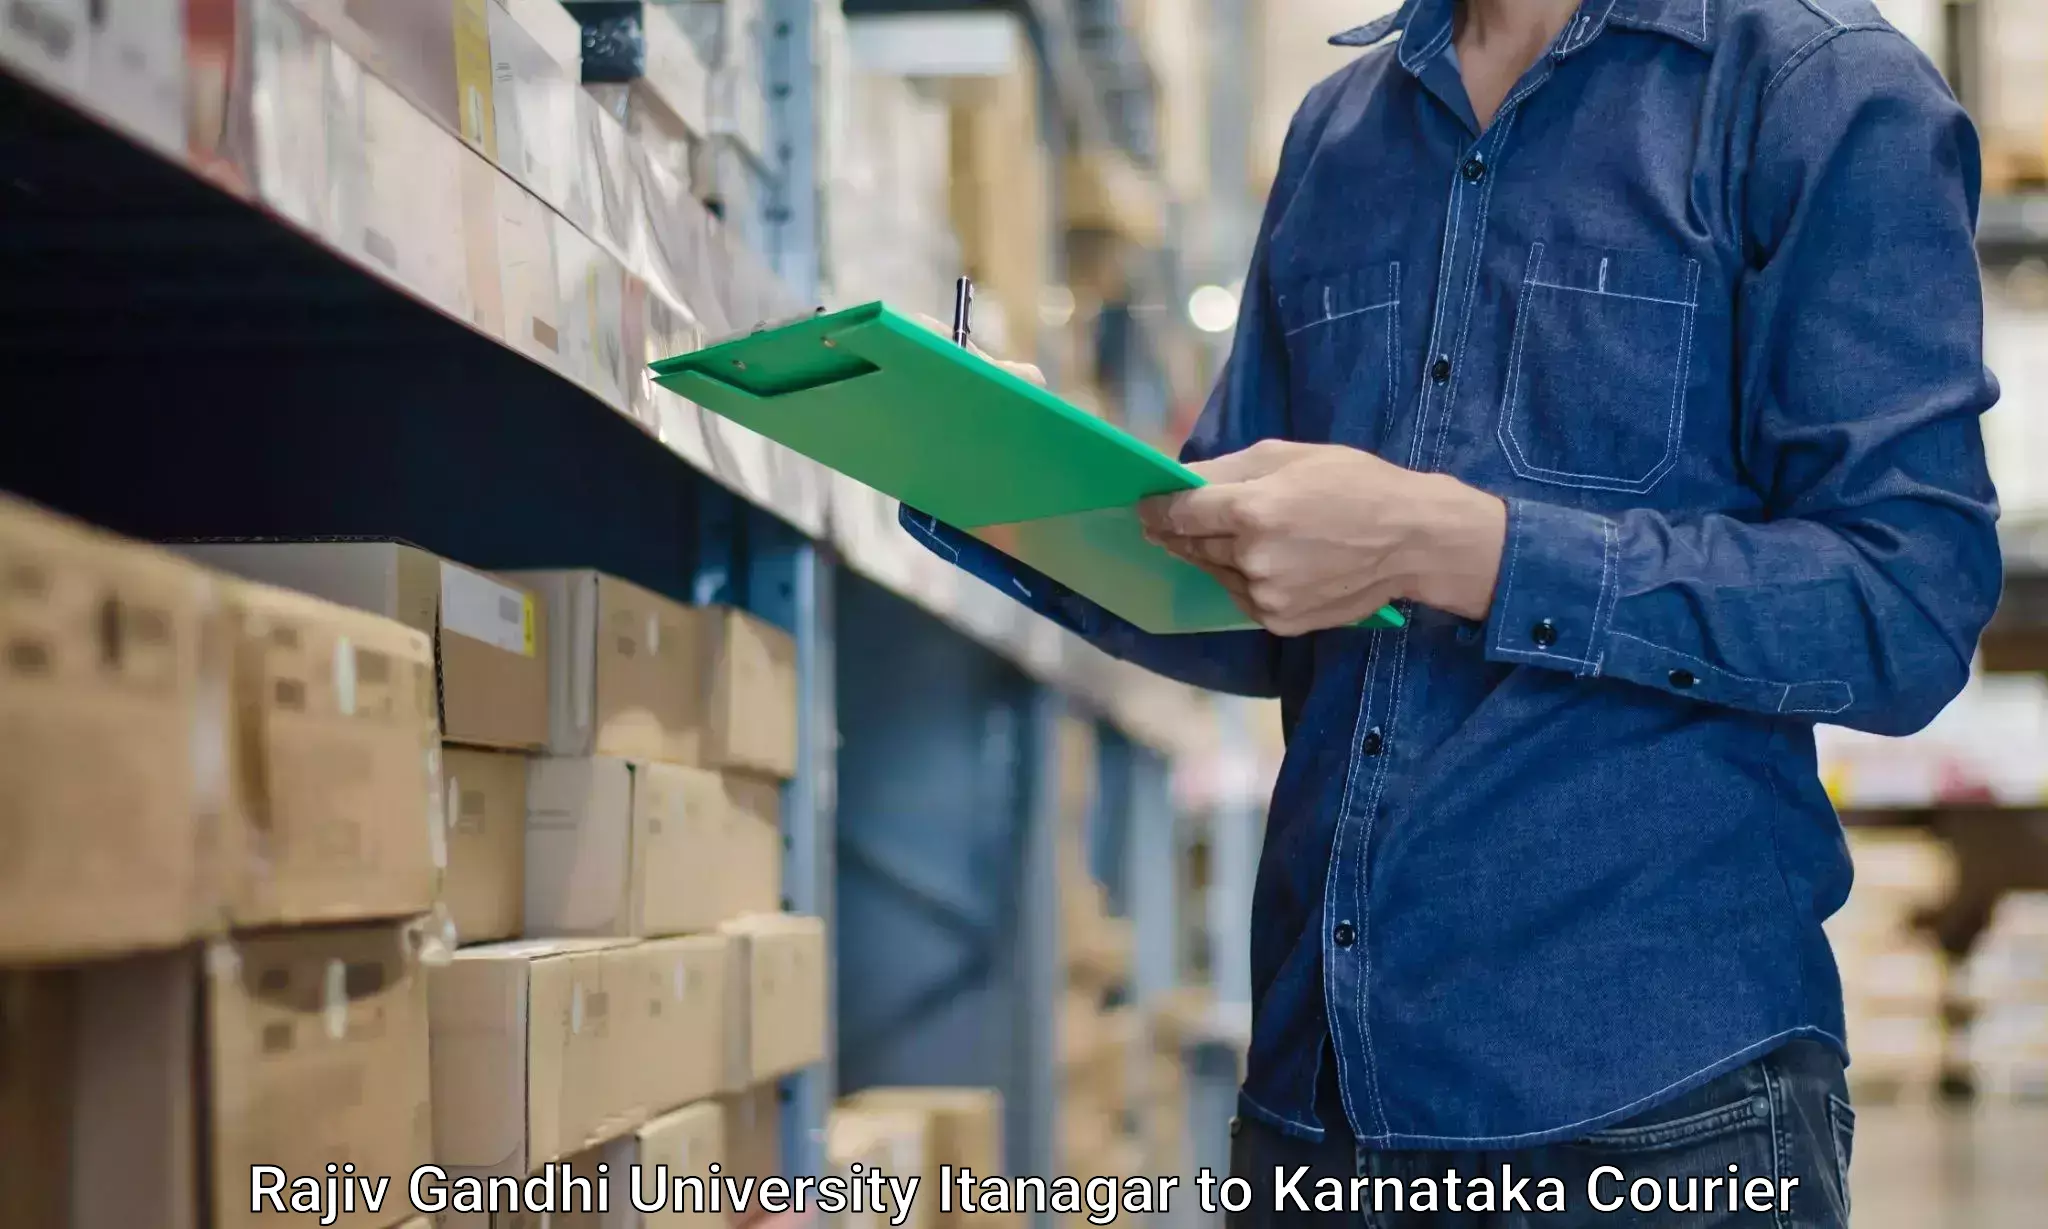 Furniture moving strategies Rajiv Gandhi University Itanagar to Karnataka